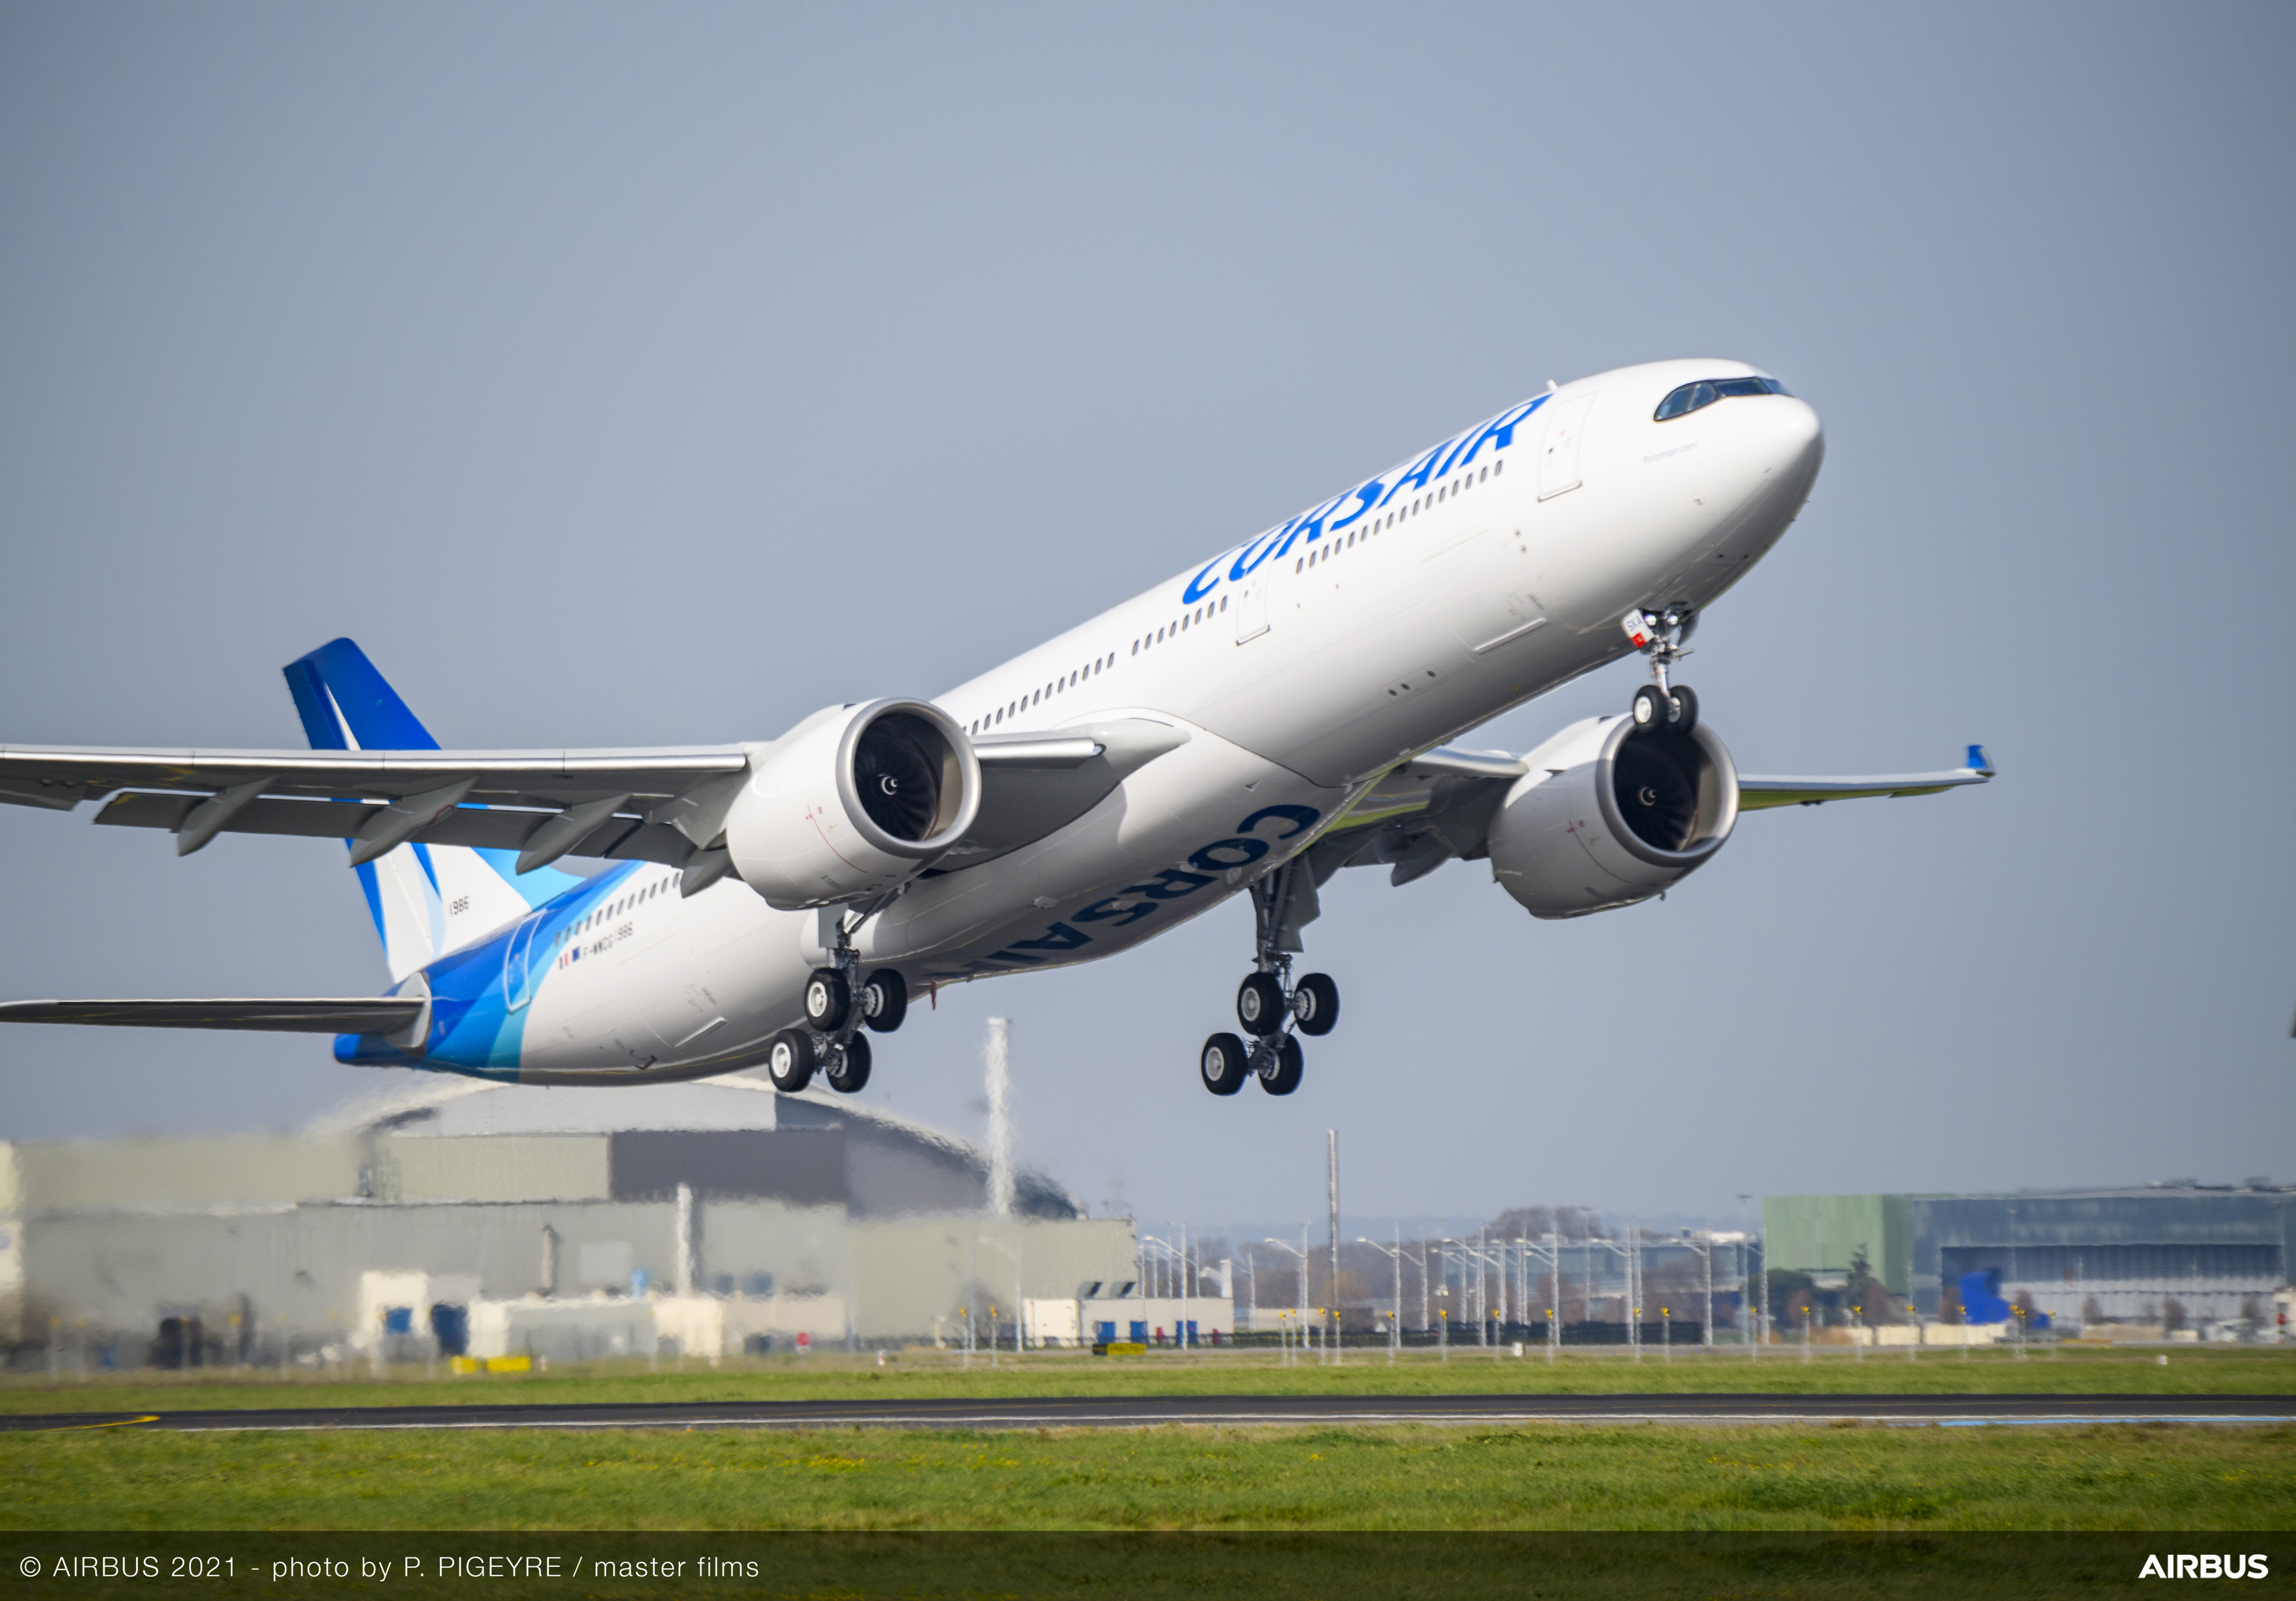     La compagnie aérienne Corsair confiante malgré l’examen de son plan de restructuration

